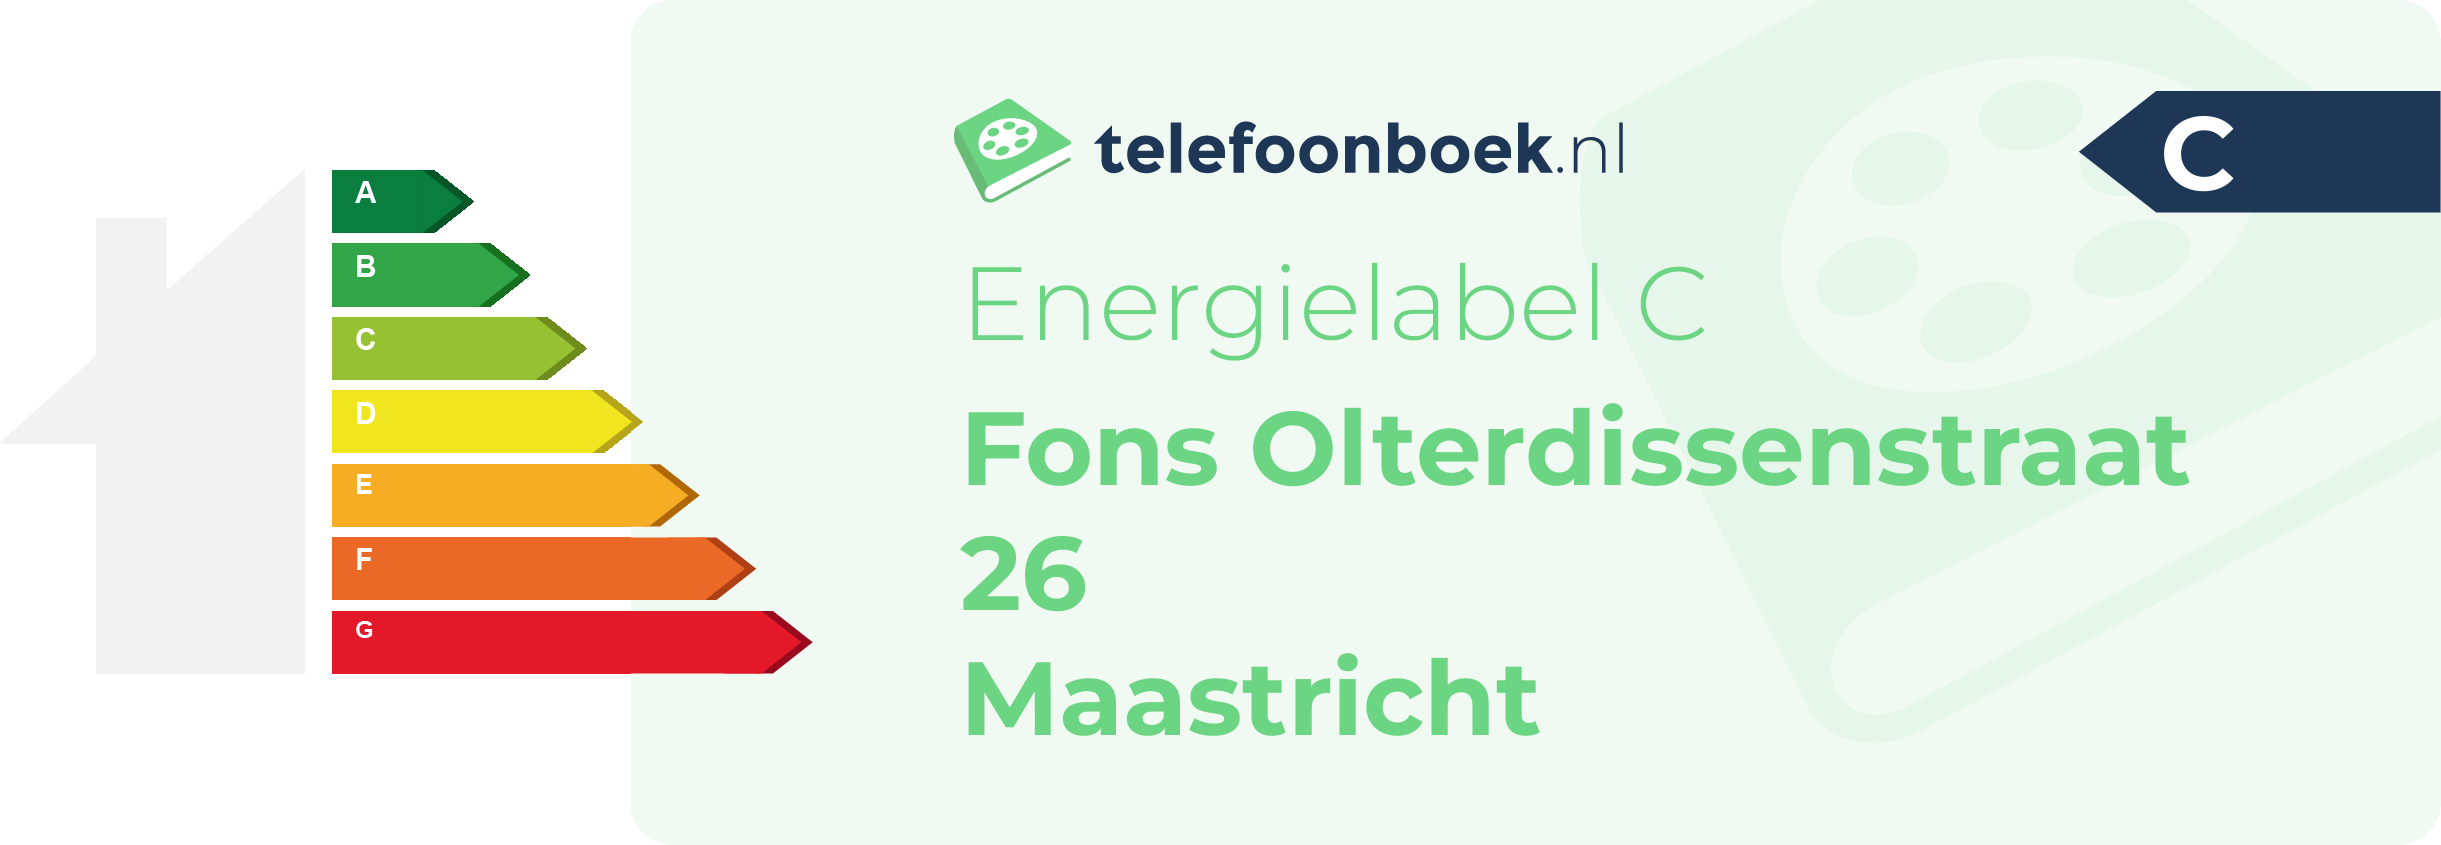 Energielabel Fons Olterdissenstraat 26 Maastricht